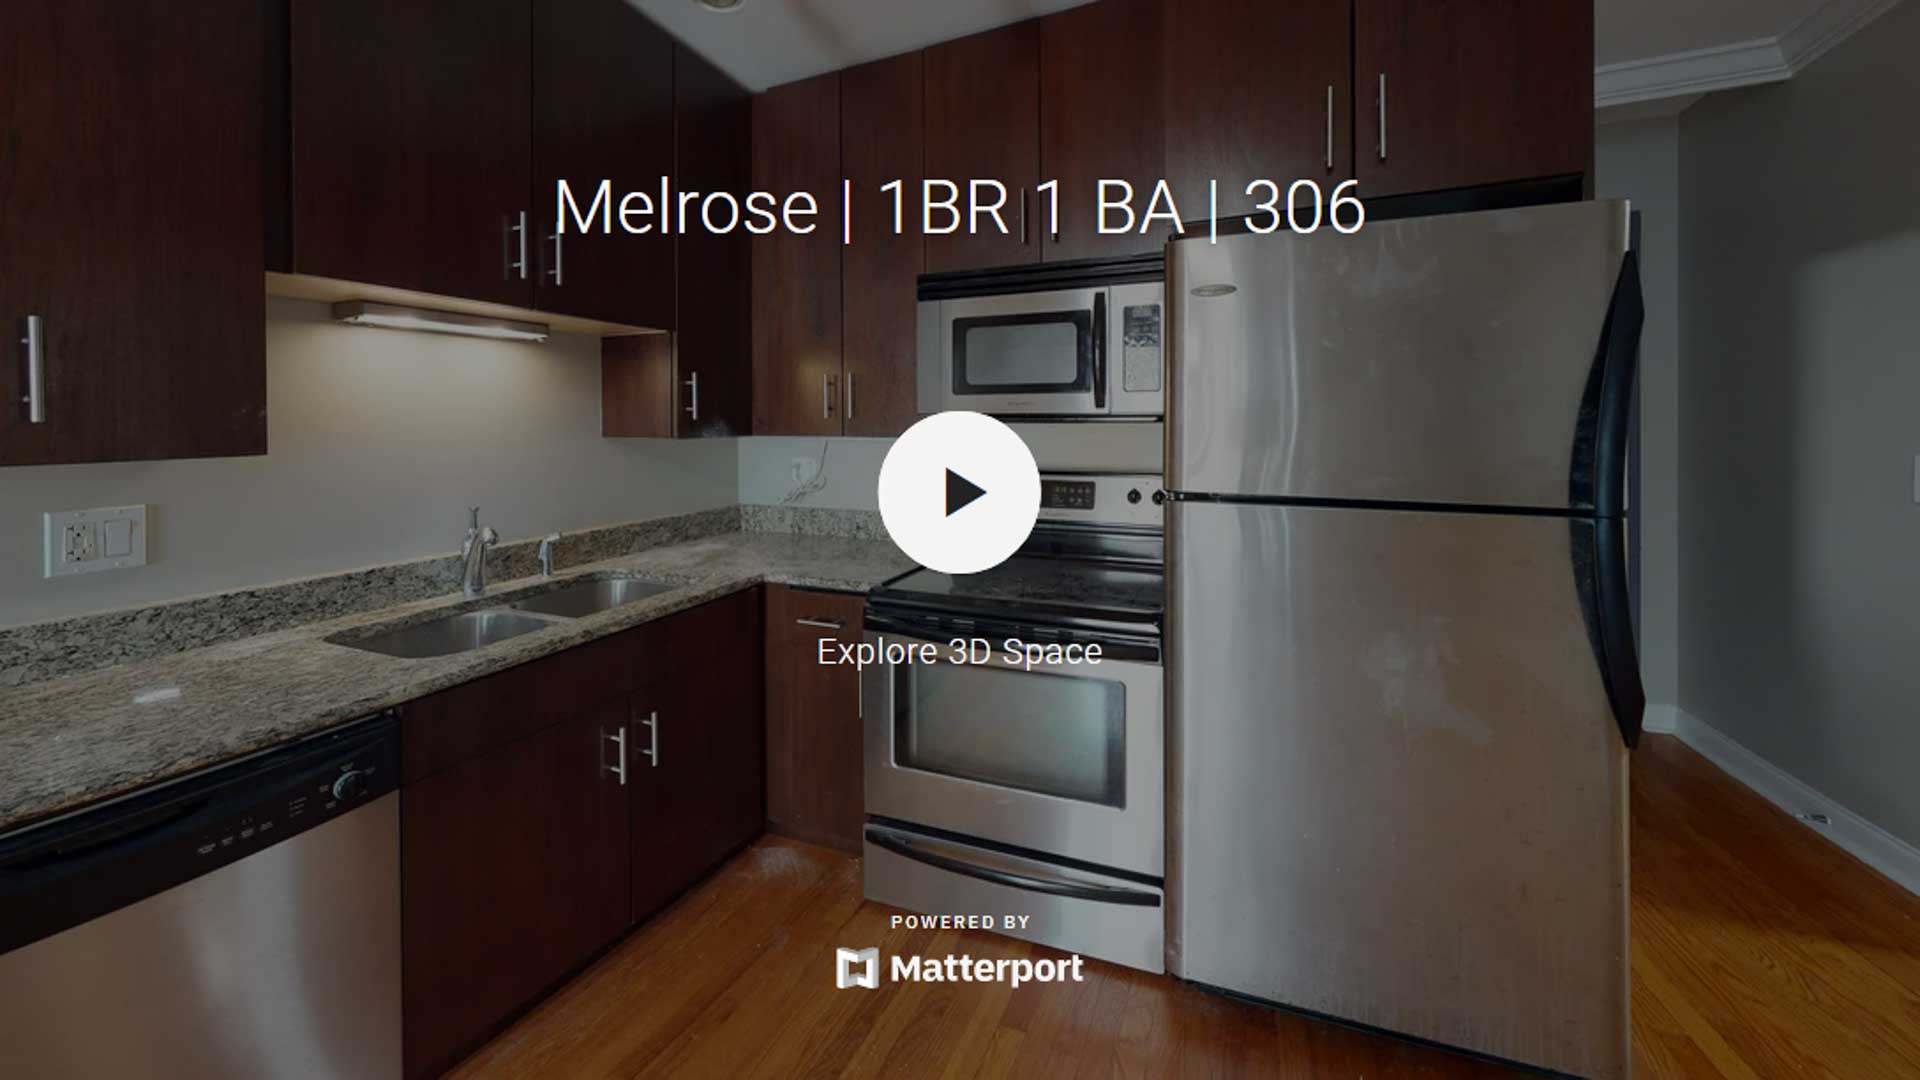 Melrose | 1BR 1 BA | 306